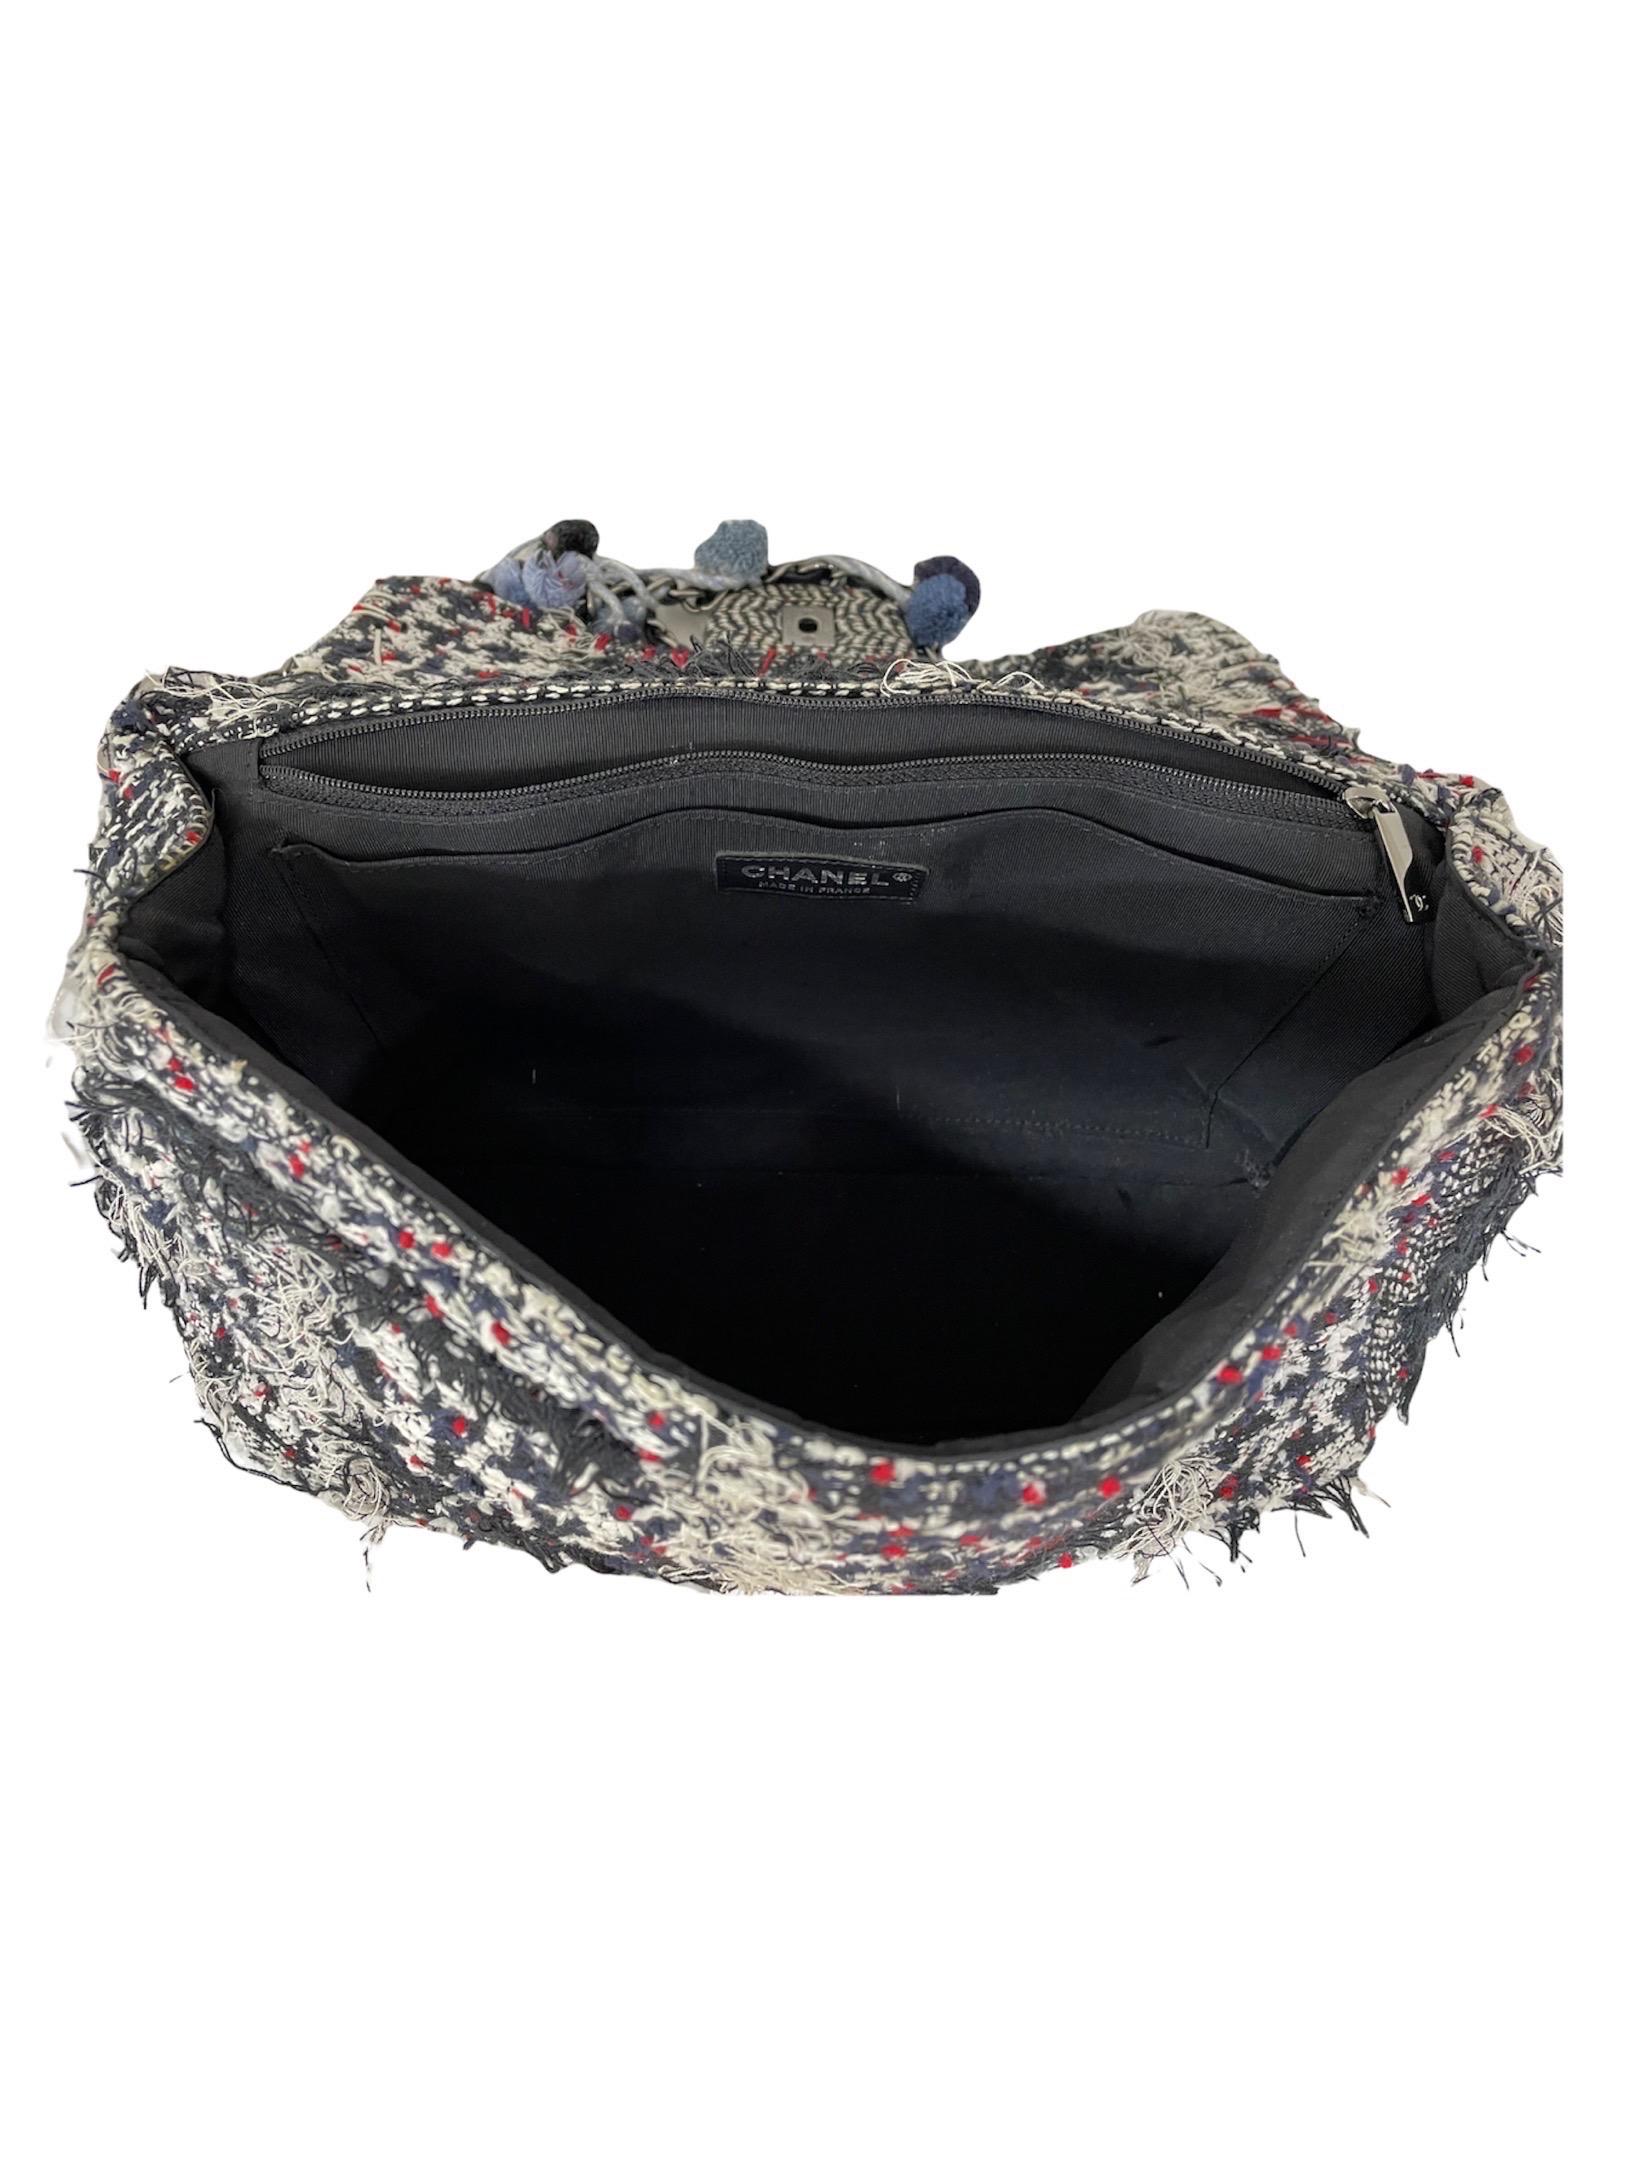 2015 Chanel Blue Tweed Shoulder Bag Limited Edition 2